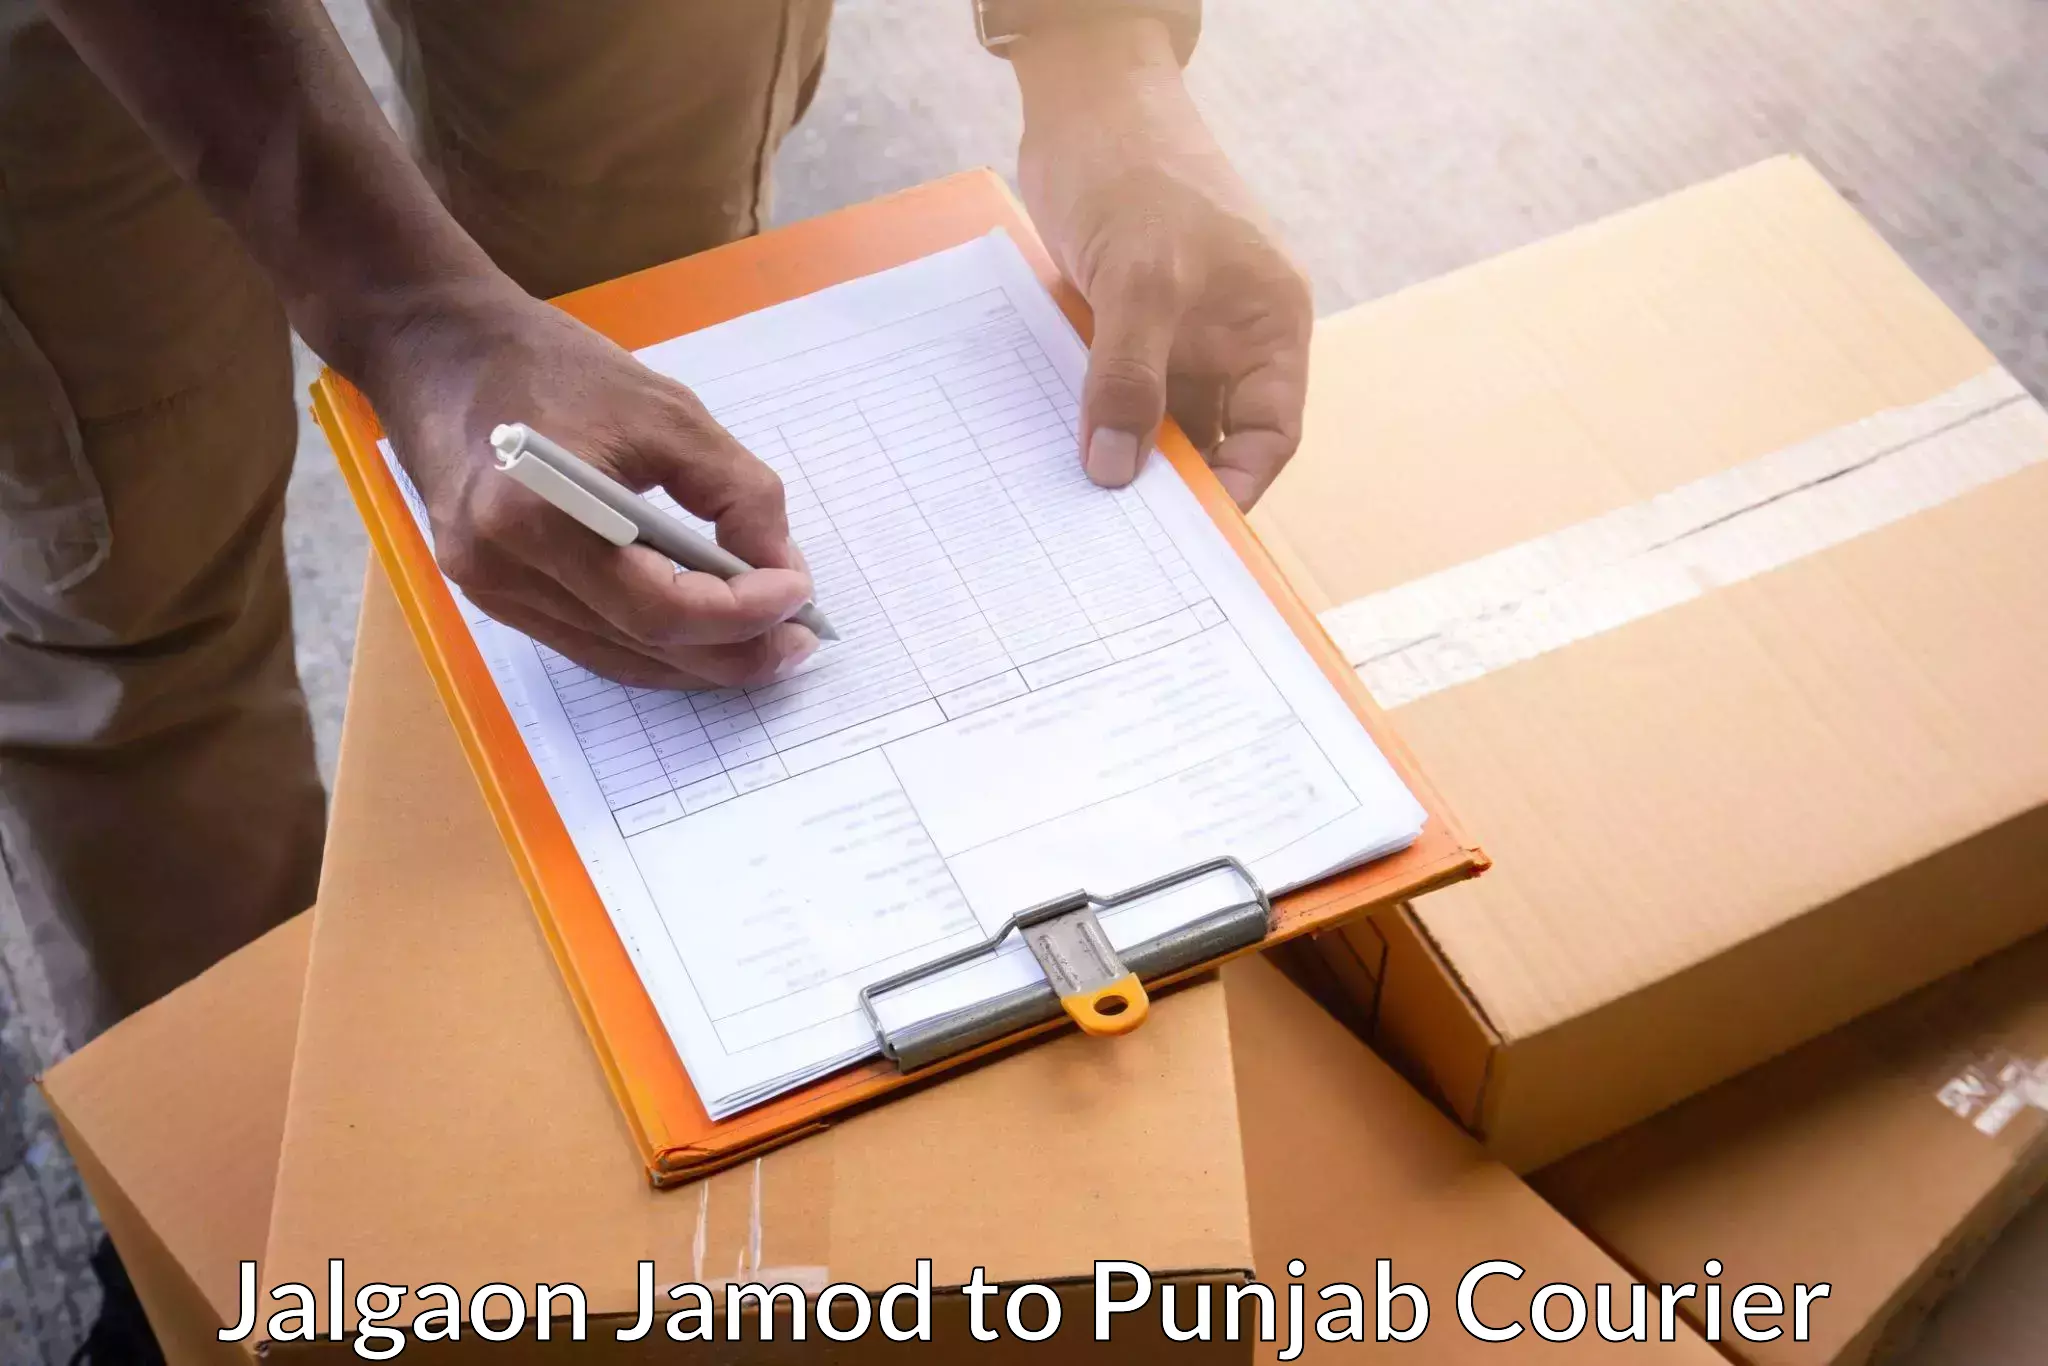 High-priority parcel service Jalgaon Jamod to Jhunir